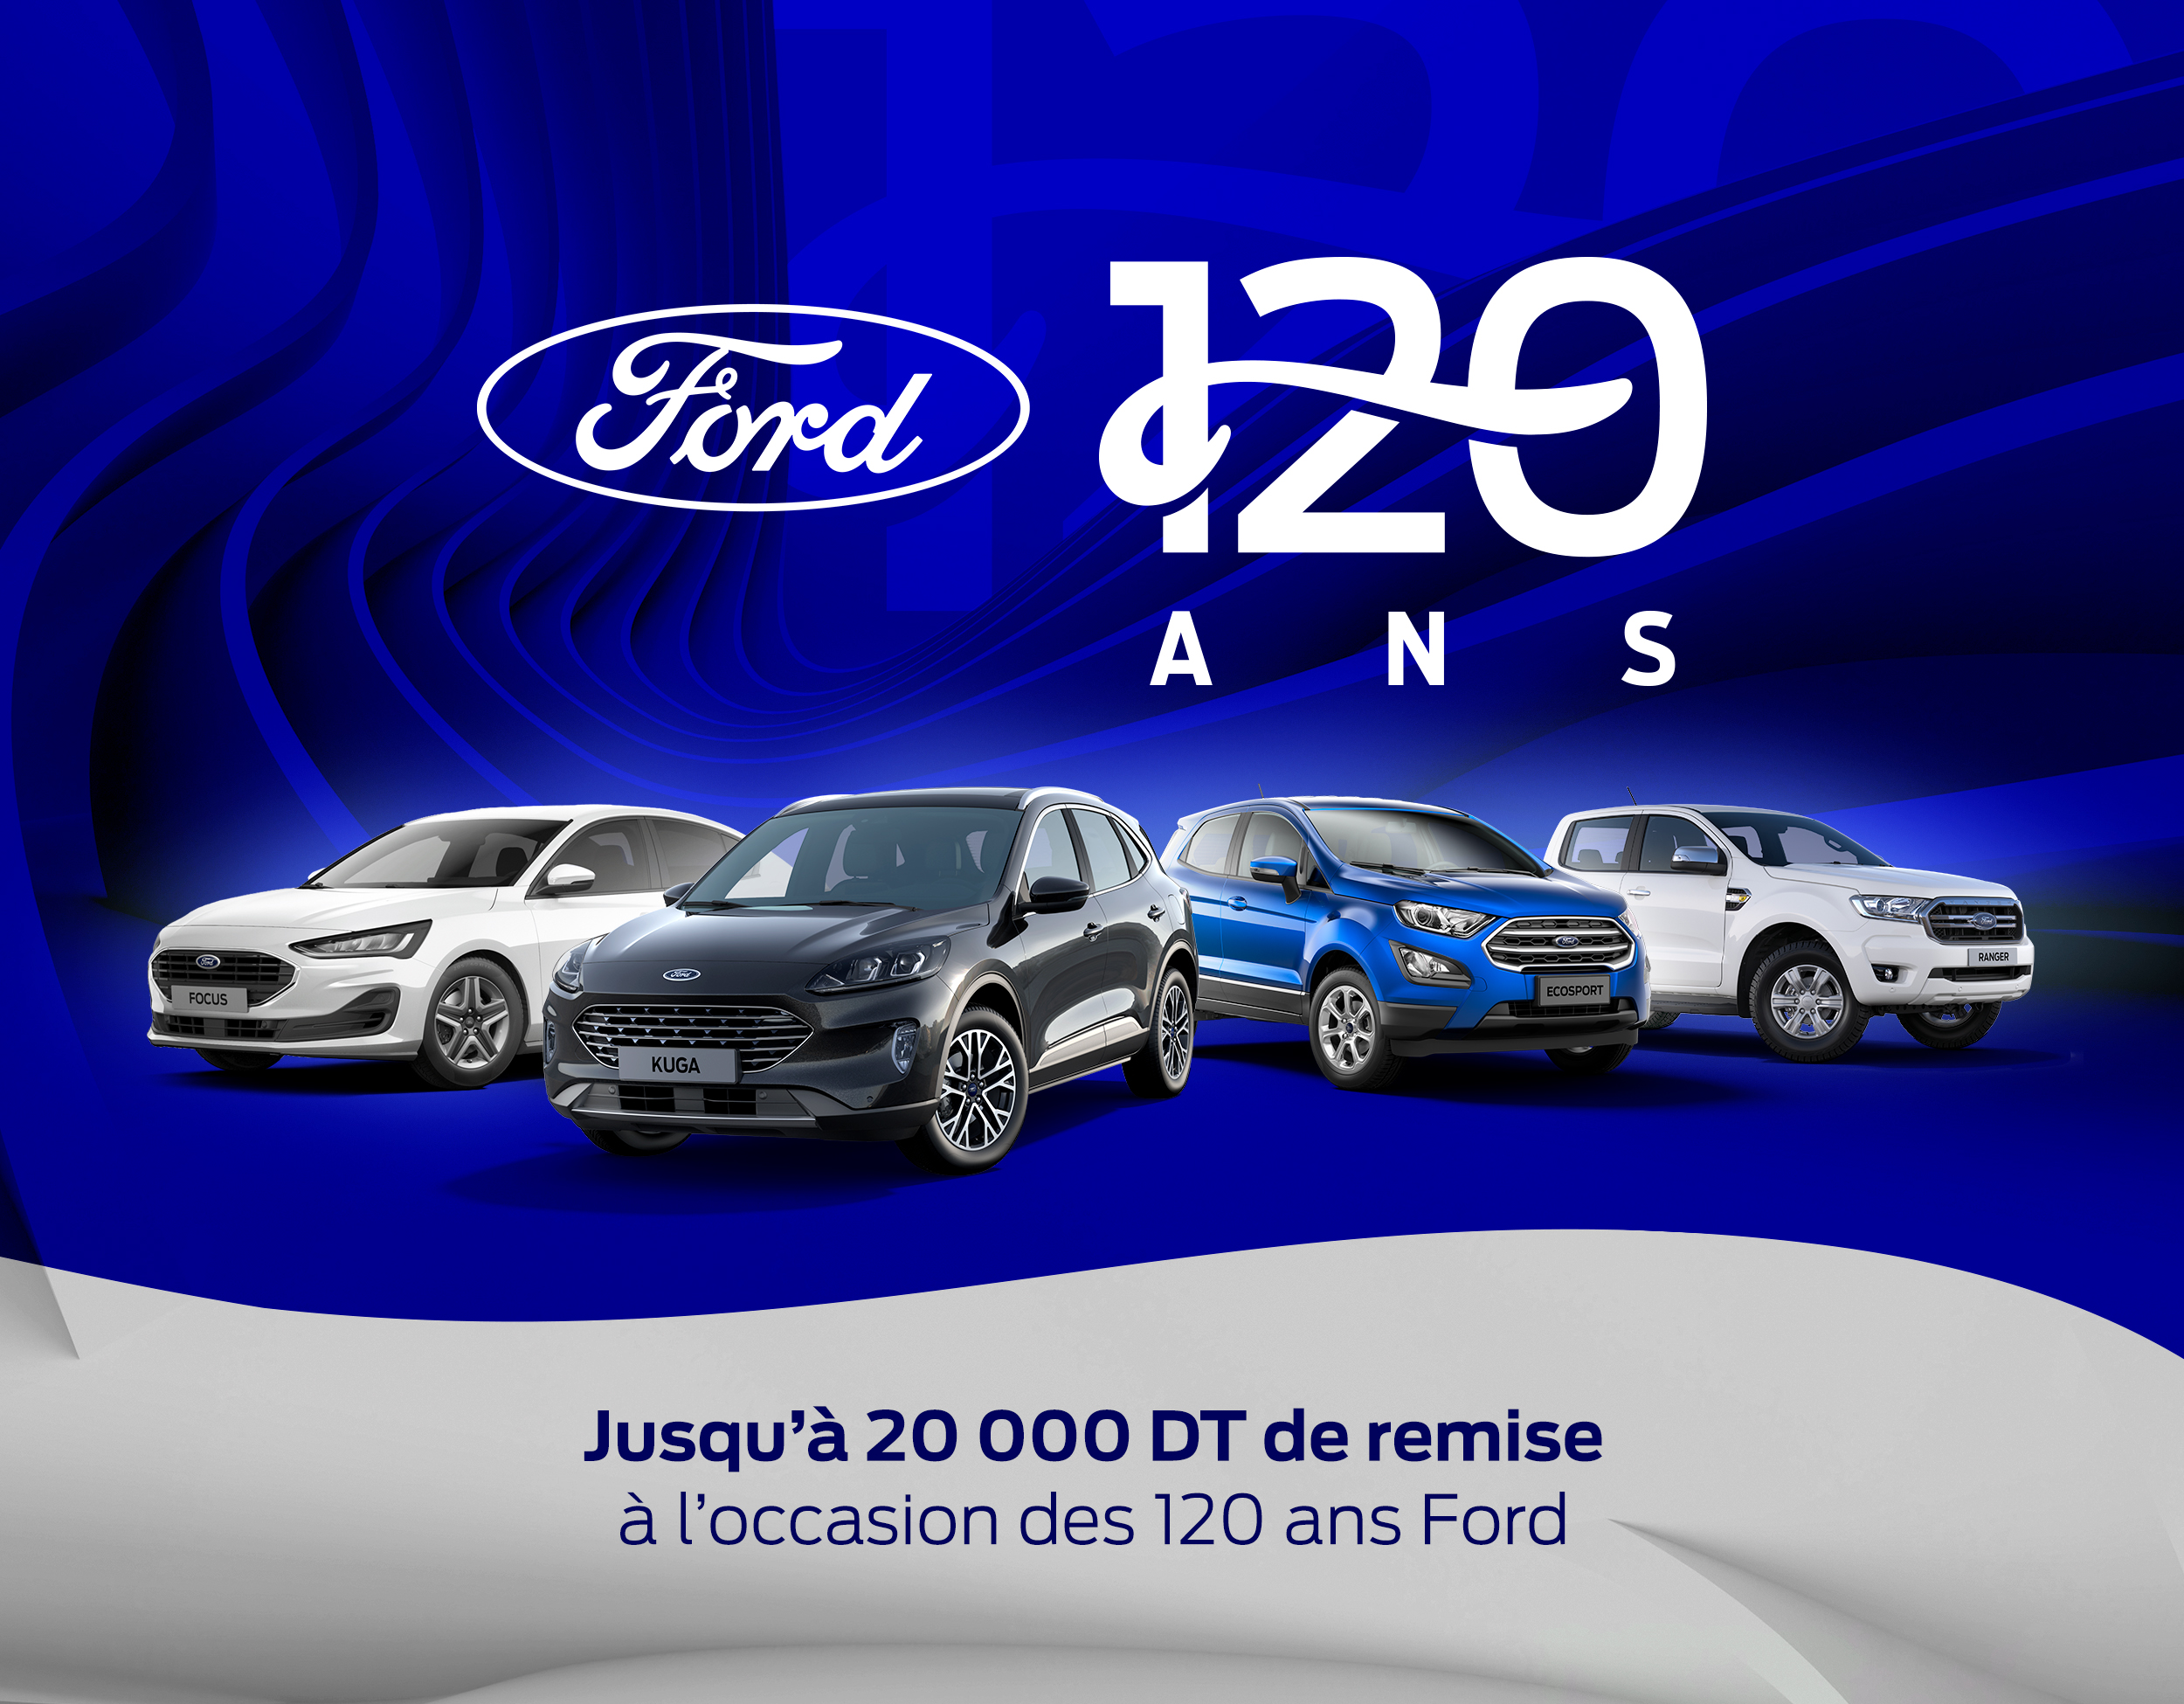 Alpha Ford annonce une campagne de prix fascinante pour célébrer le 120ème anniversaire du constructeur Ford